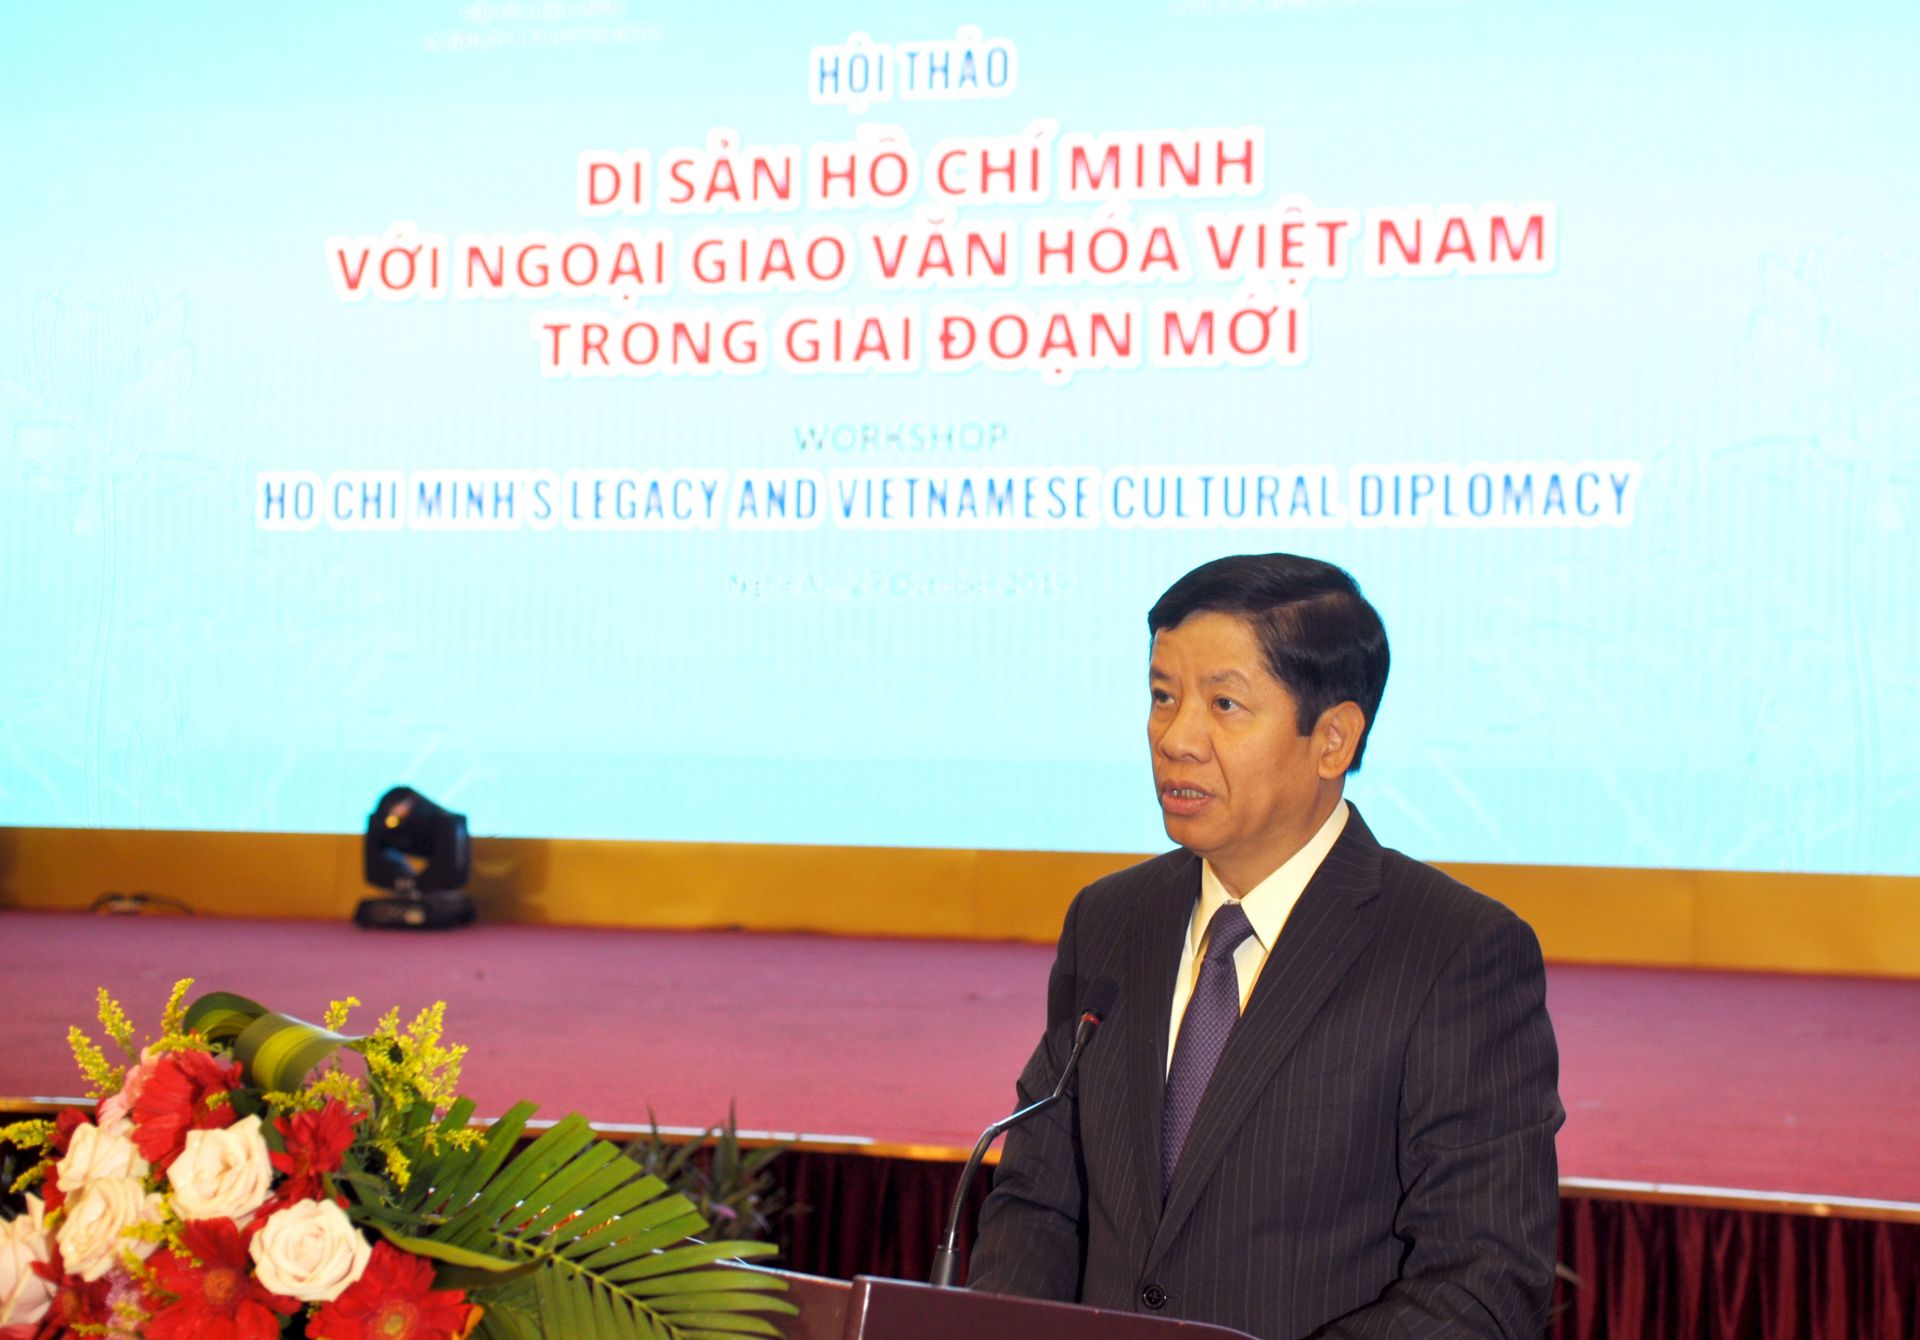 Hoạt động ngoại giao văn hóa góp phần tôn vinh Chủ tịch Hồ Chí Minh